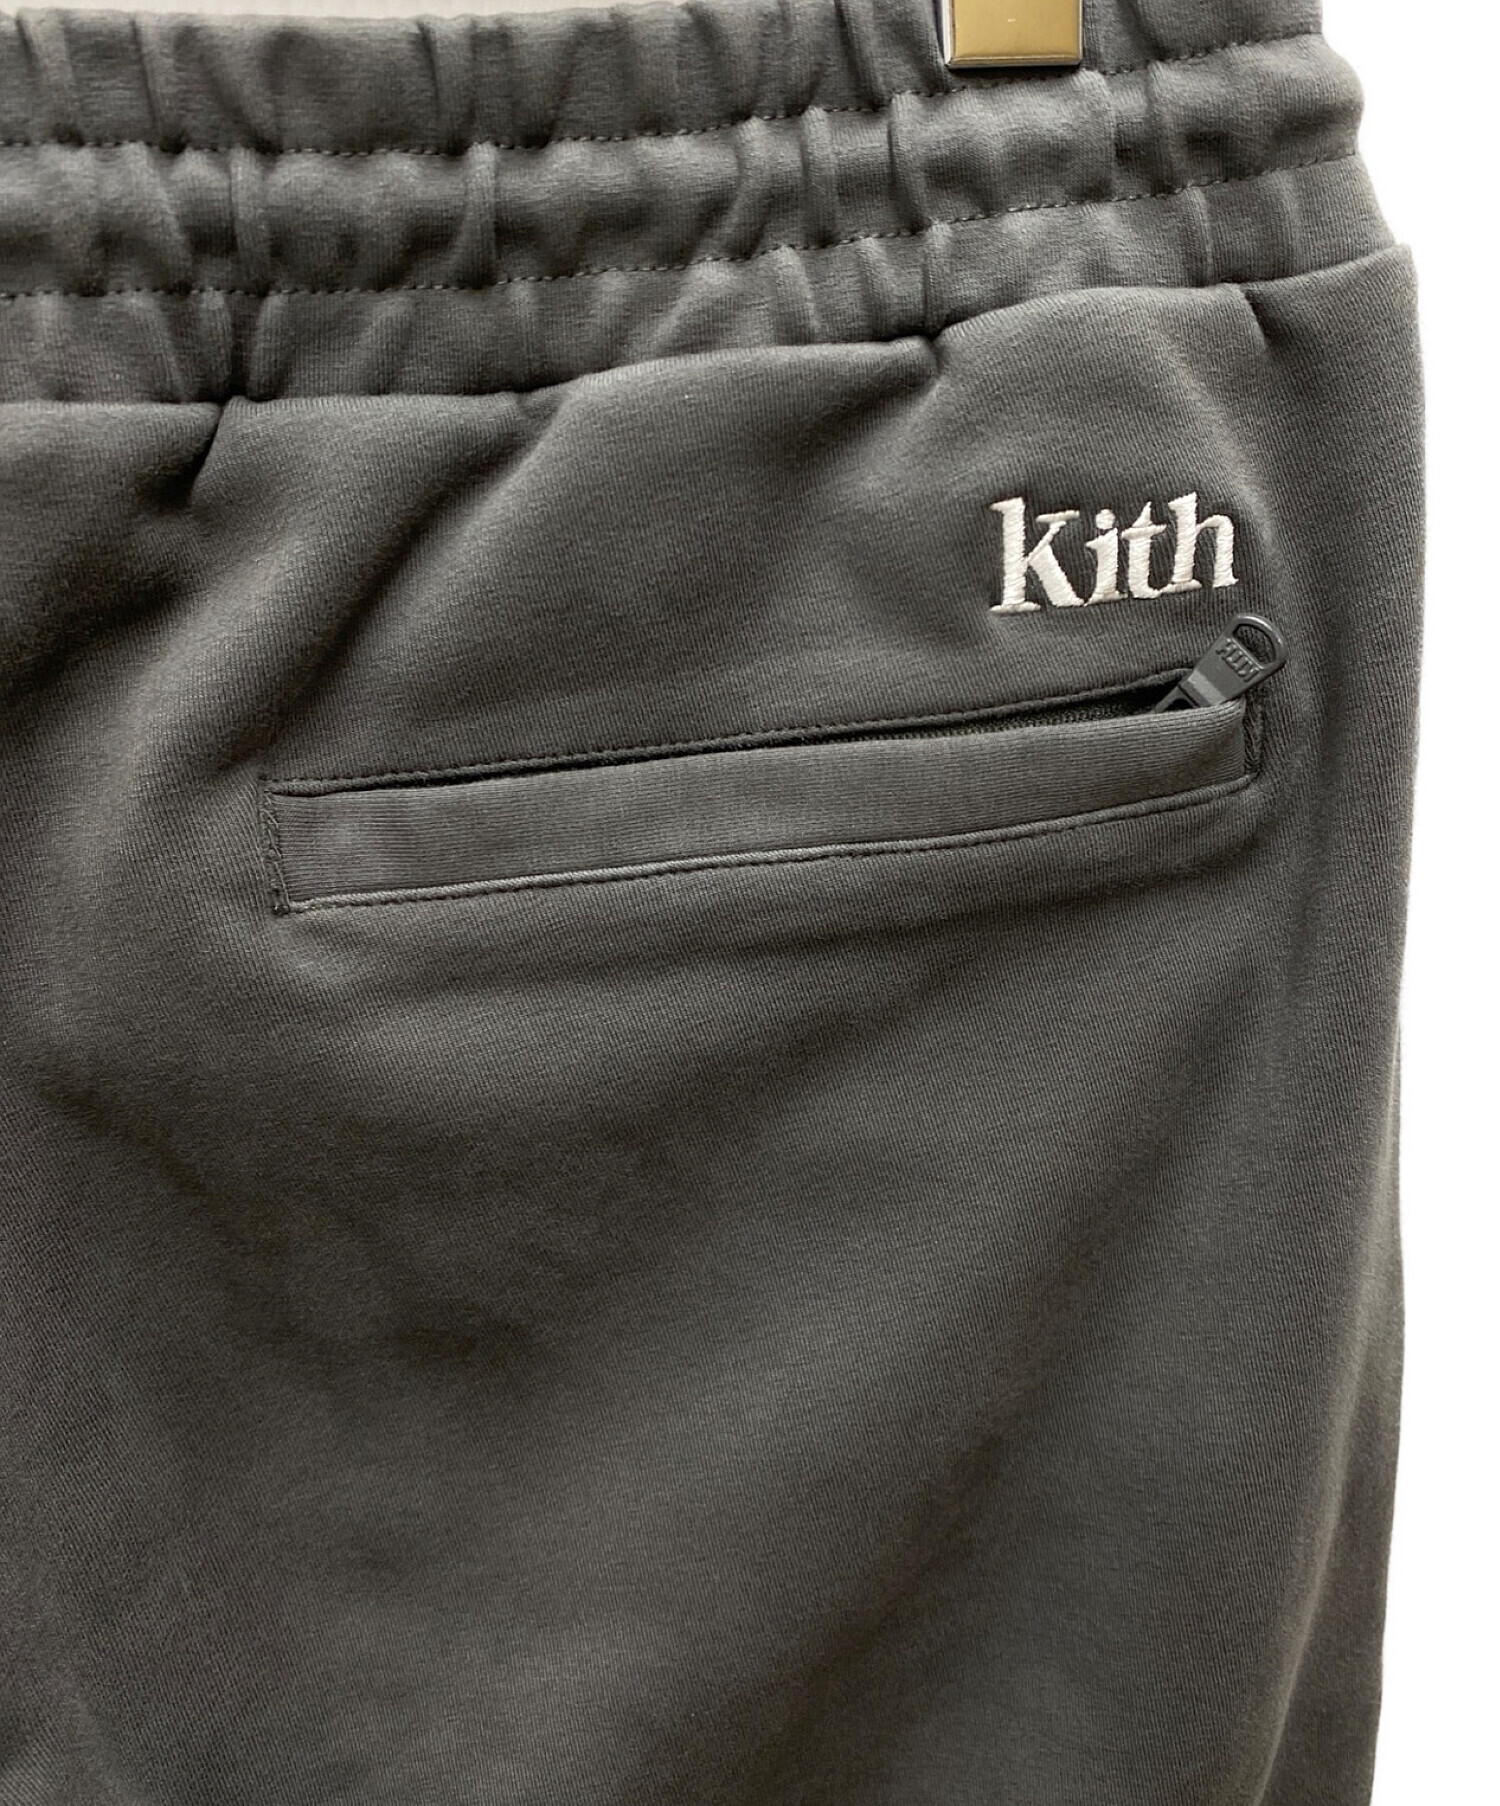 KITH (キス) ロゴ刺繍スウェットパンツ グレー サイズ:L